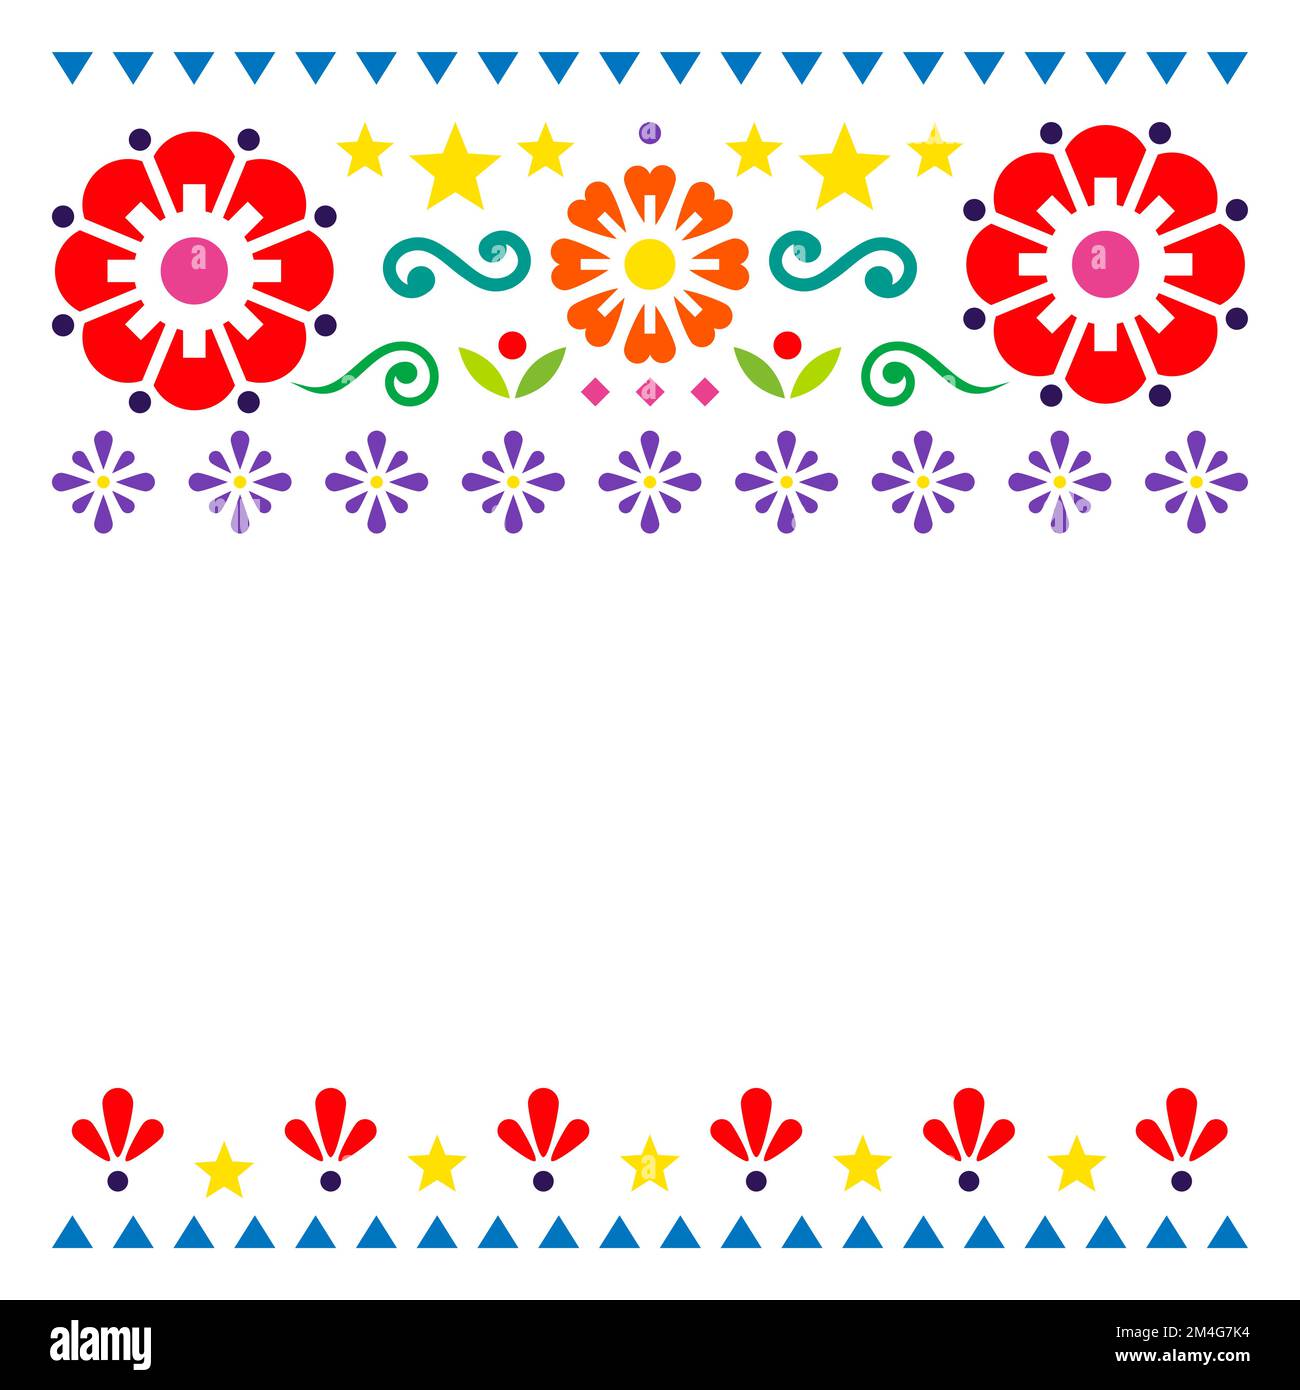 Motif de fleurs mexicaines, carte de vœux vectorielle rétro de style art populaire ou motif d'invitation Illustration de Vecteur